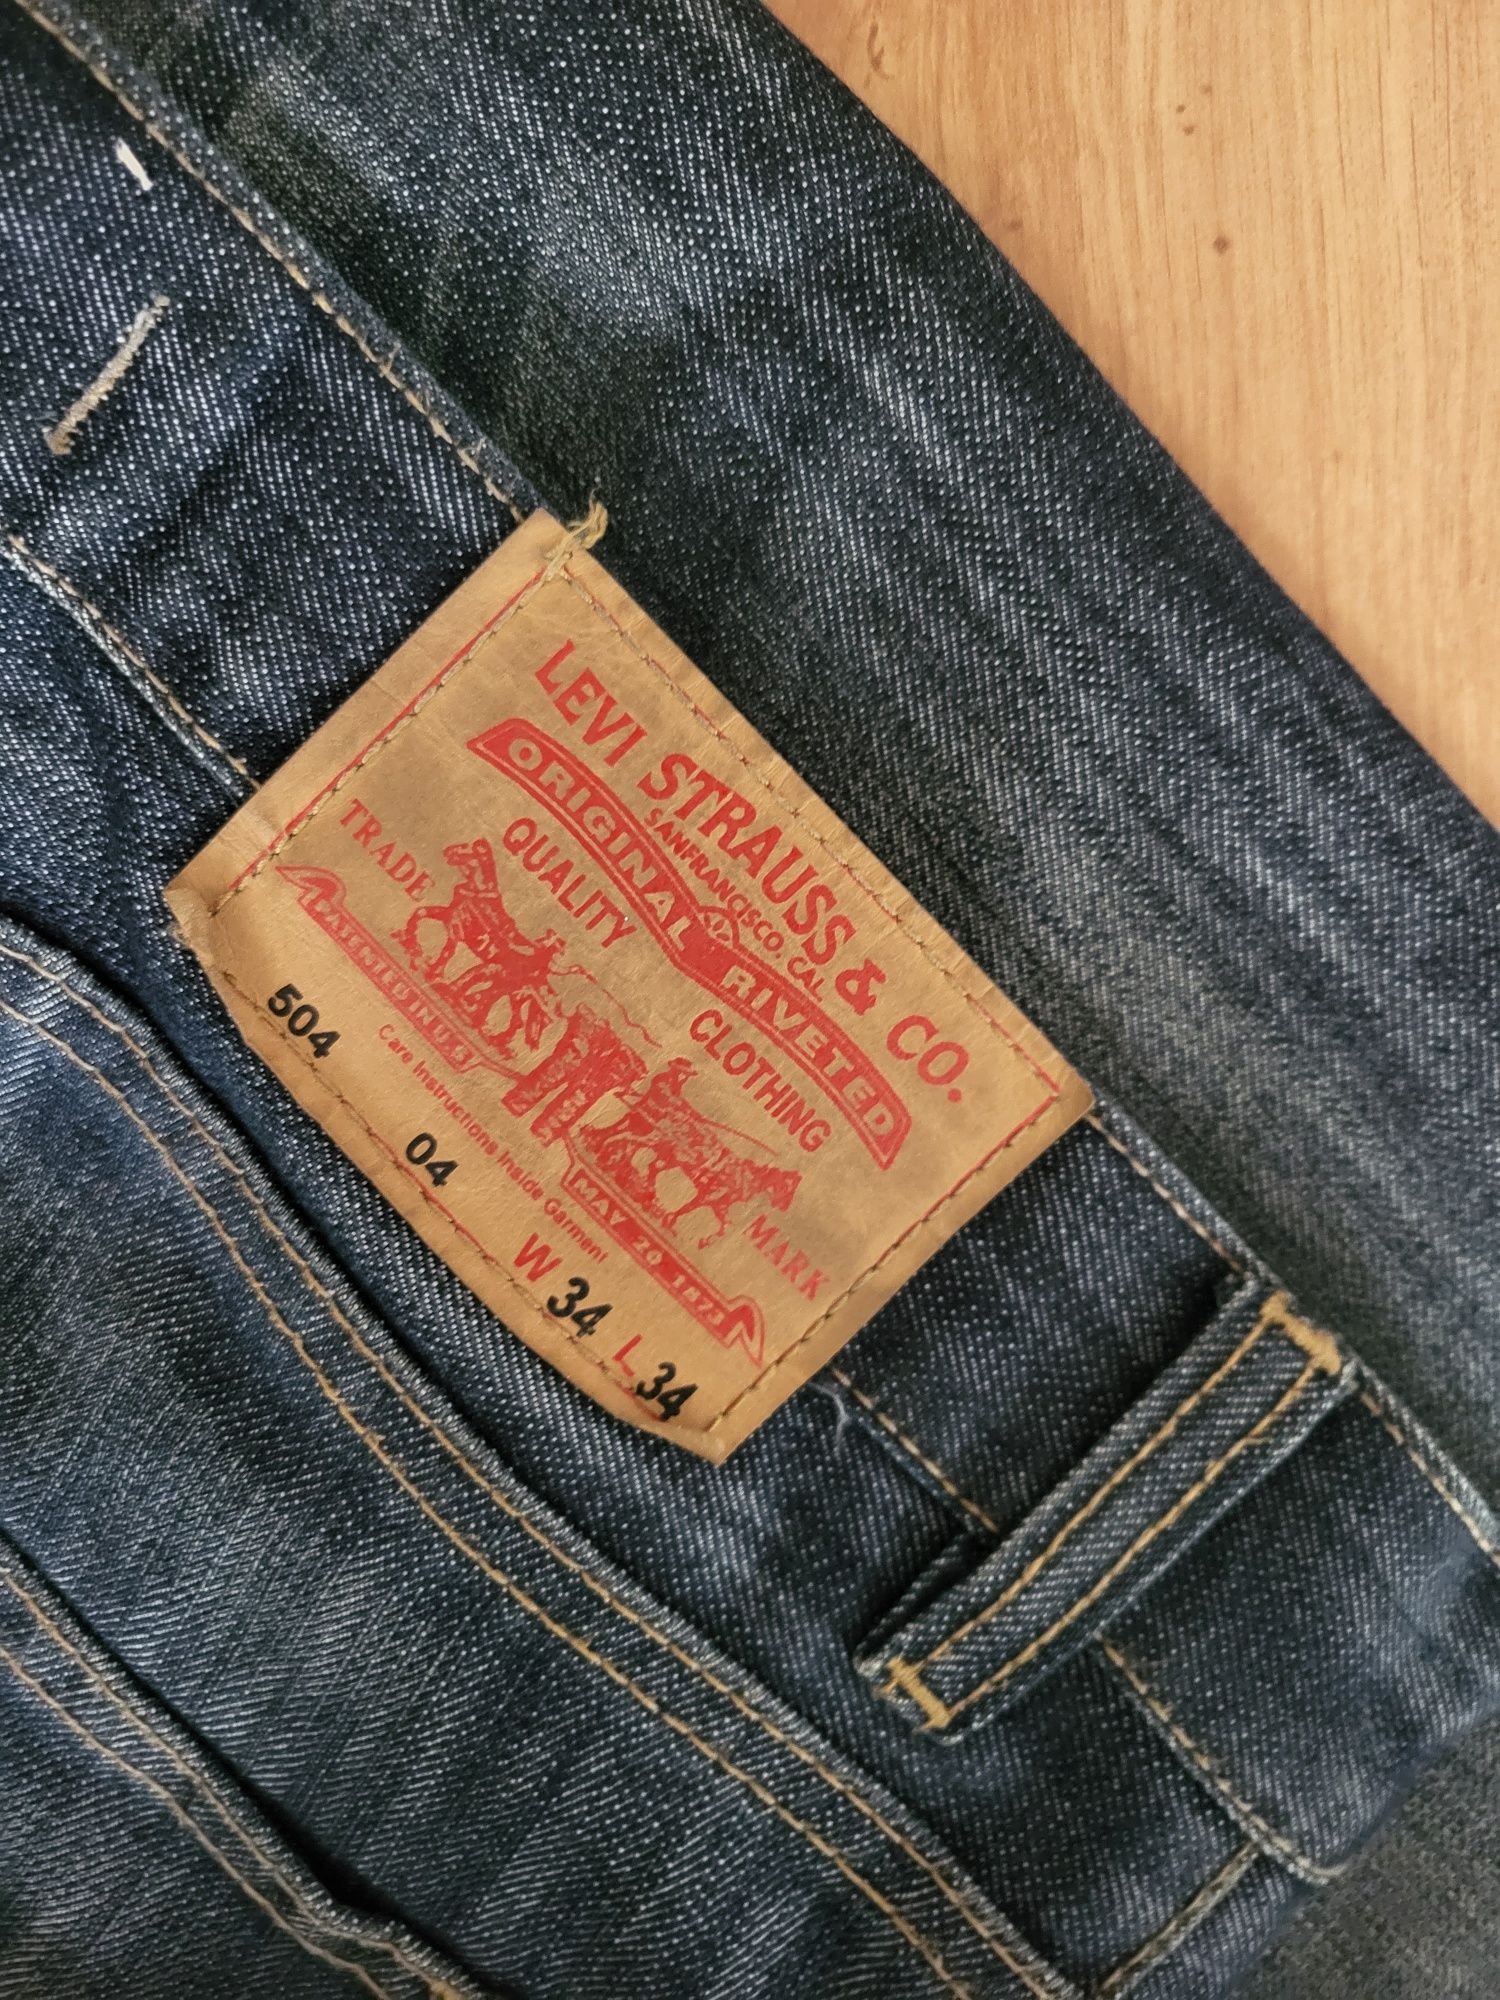 Spodeni Levi Strauss & CO jeansy nowa kolekcja męskie